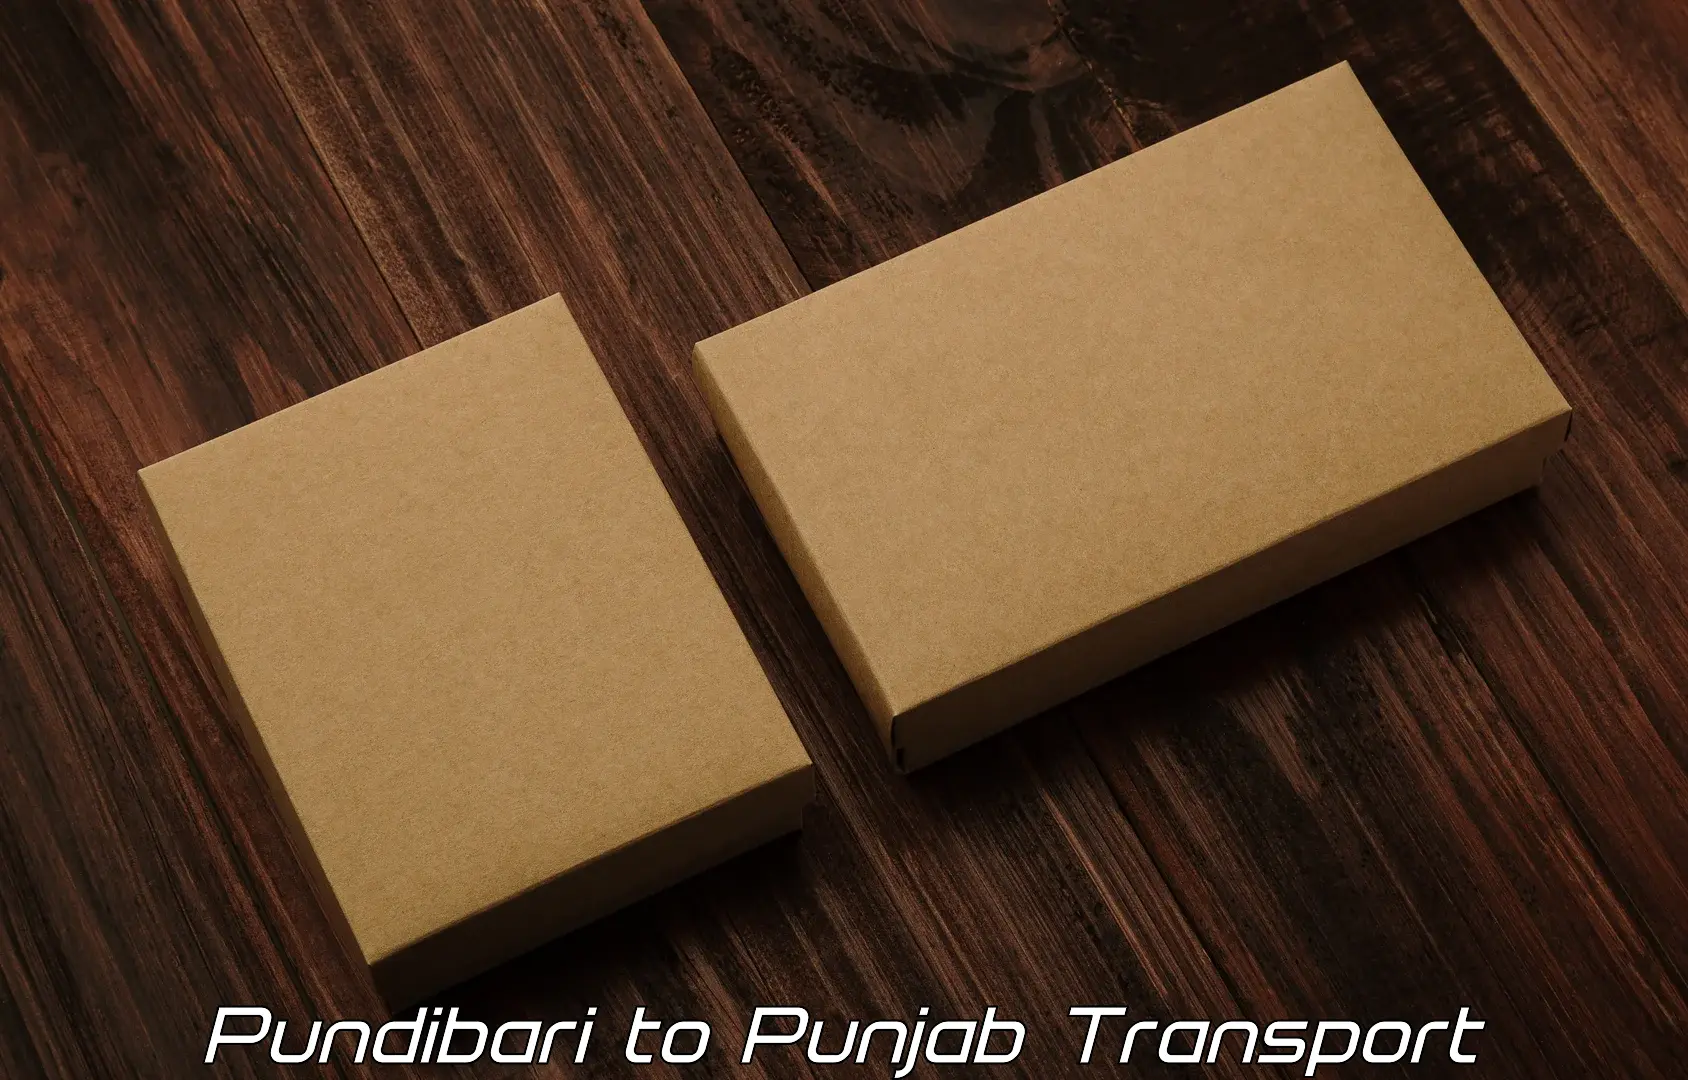 Two wheeler transport services Pundibari to Punjab